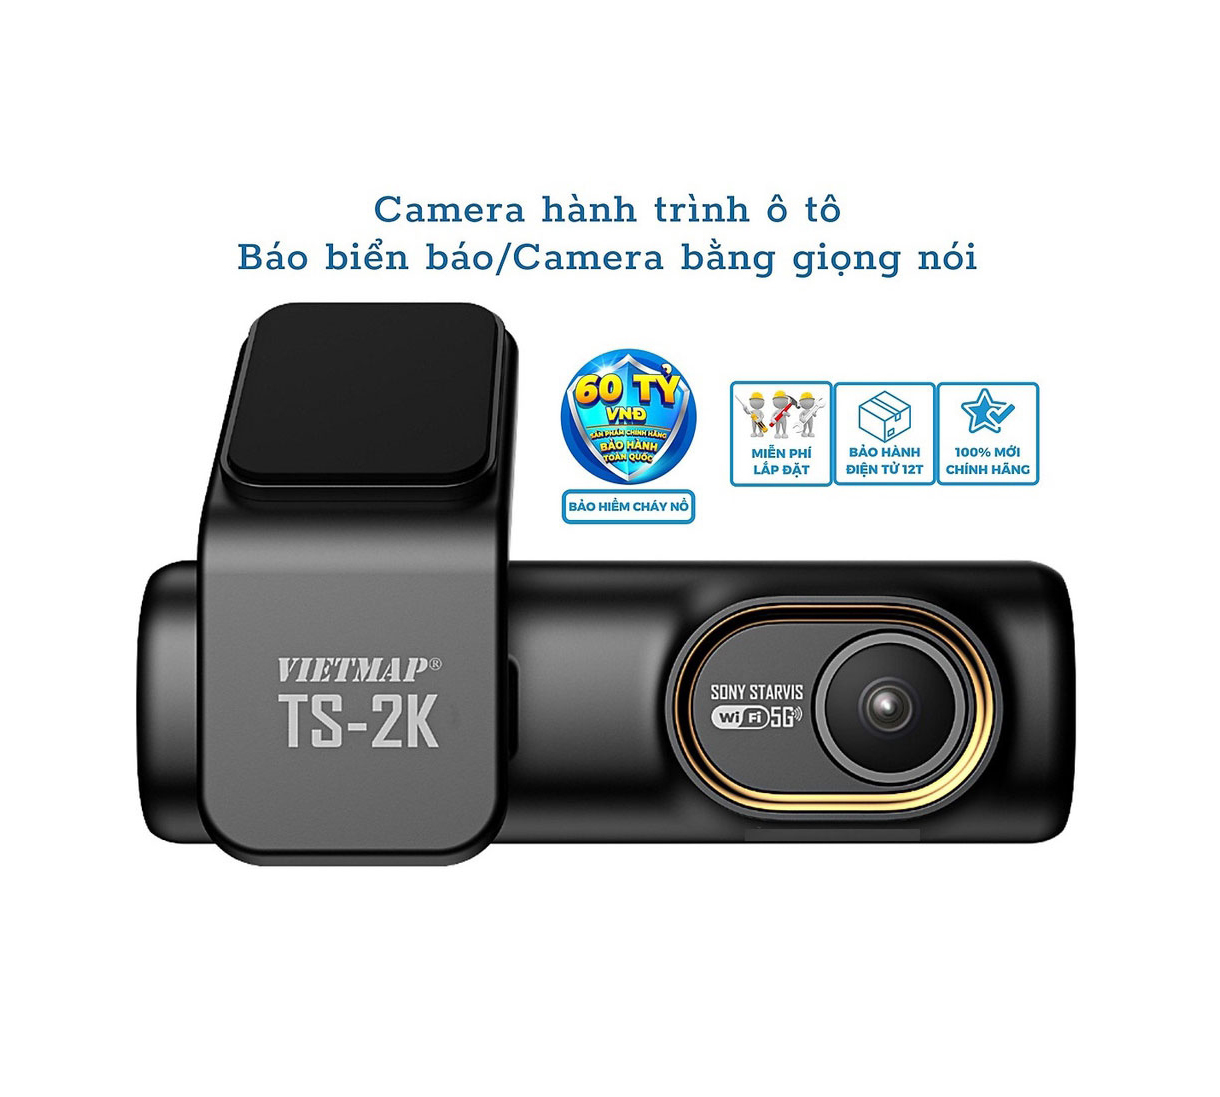 Camera Vietmap Ts-2k - Cảnh Báo Tốc Độ Giới Hạn Bằng Giọng Nói - Ghi Hình 2k Hành Trình Ô Tô - Hàng Chính Hãng